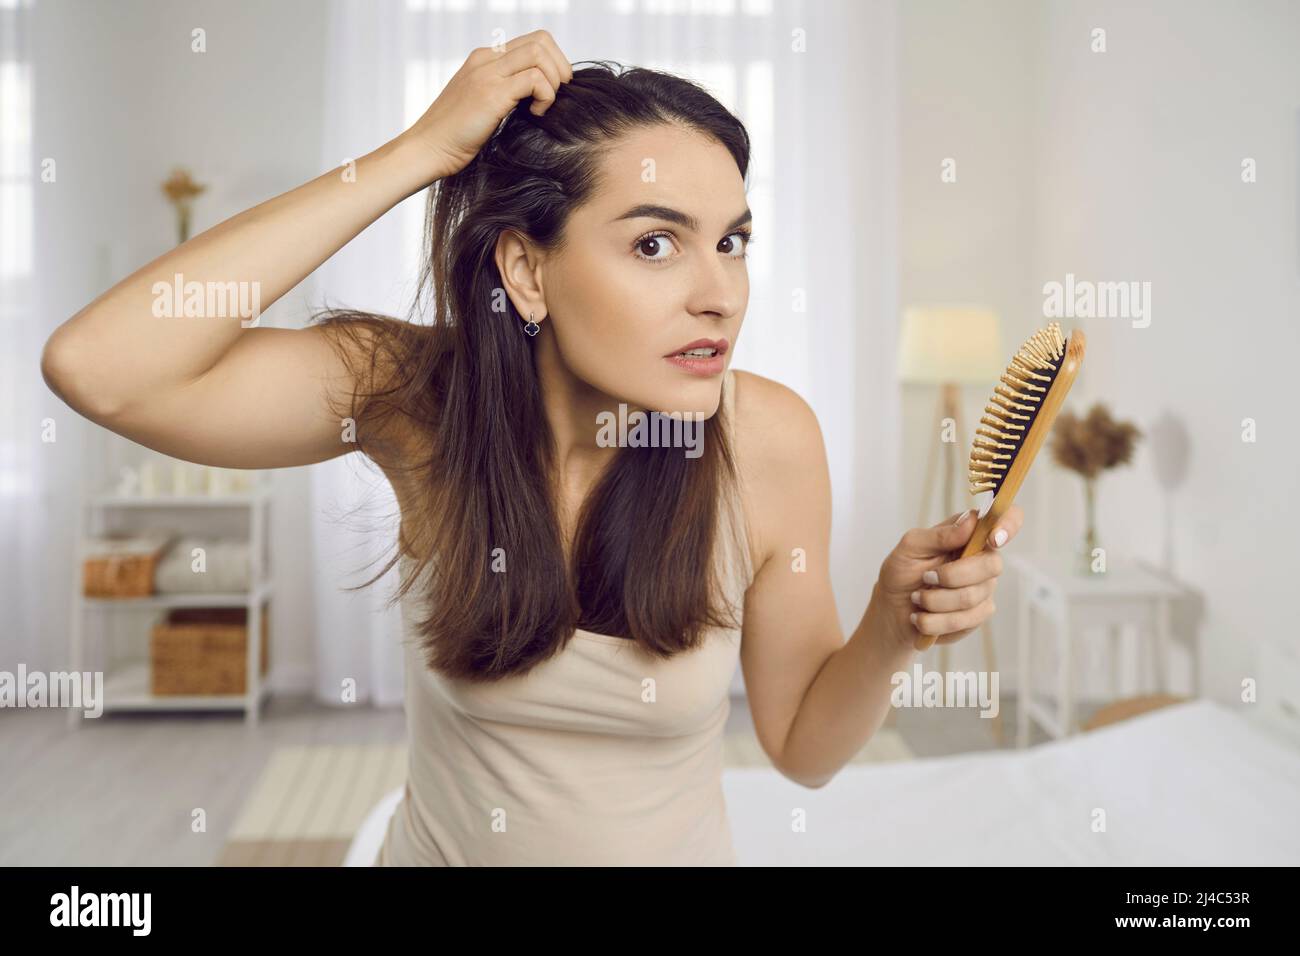 Junge Frau ist durch Anzeichen von Haarausfall Angst oder gestresst wegen der Kopfhautschuppen Stockfoto